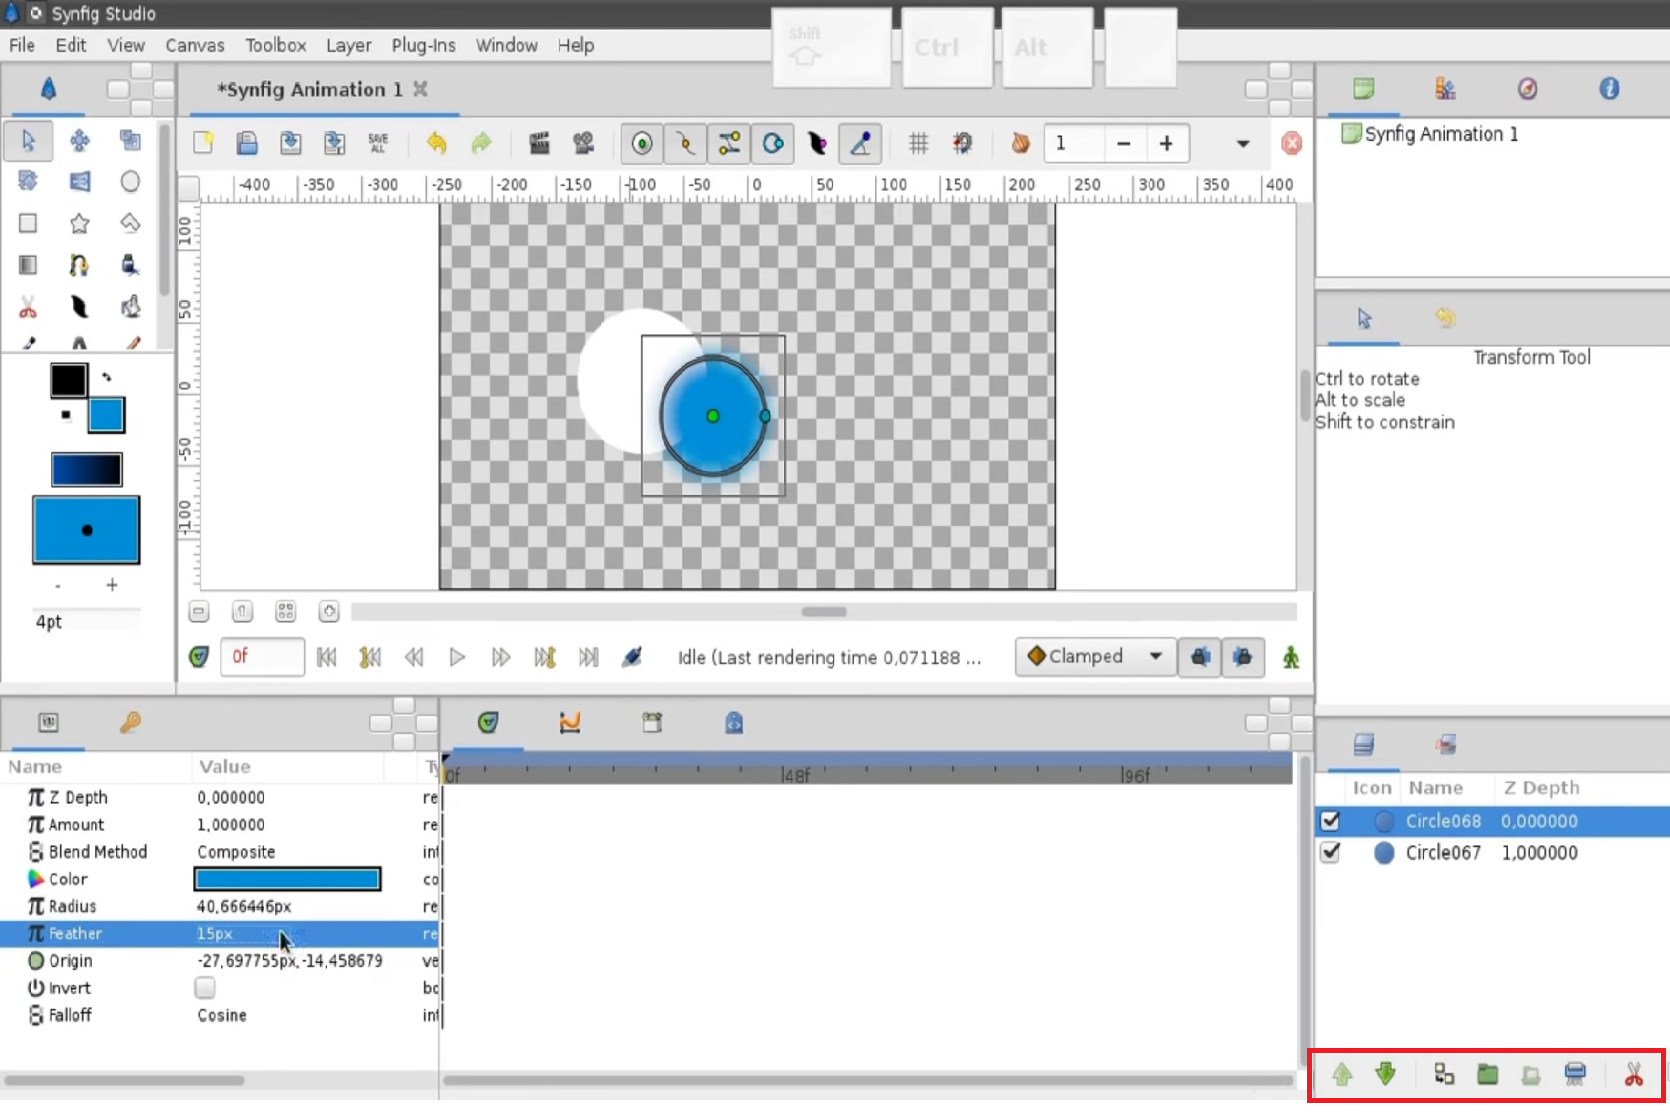 Synfig hướng dẫn một phần mềm hoạt hình 2D nguồn mở